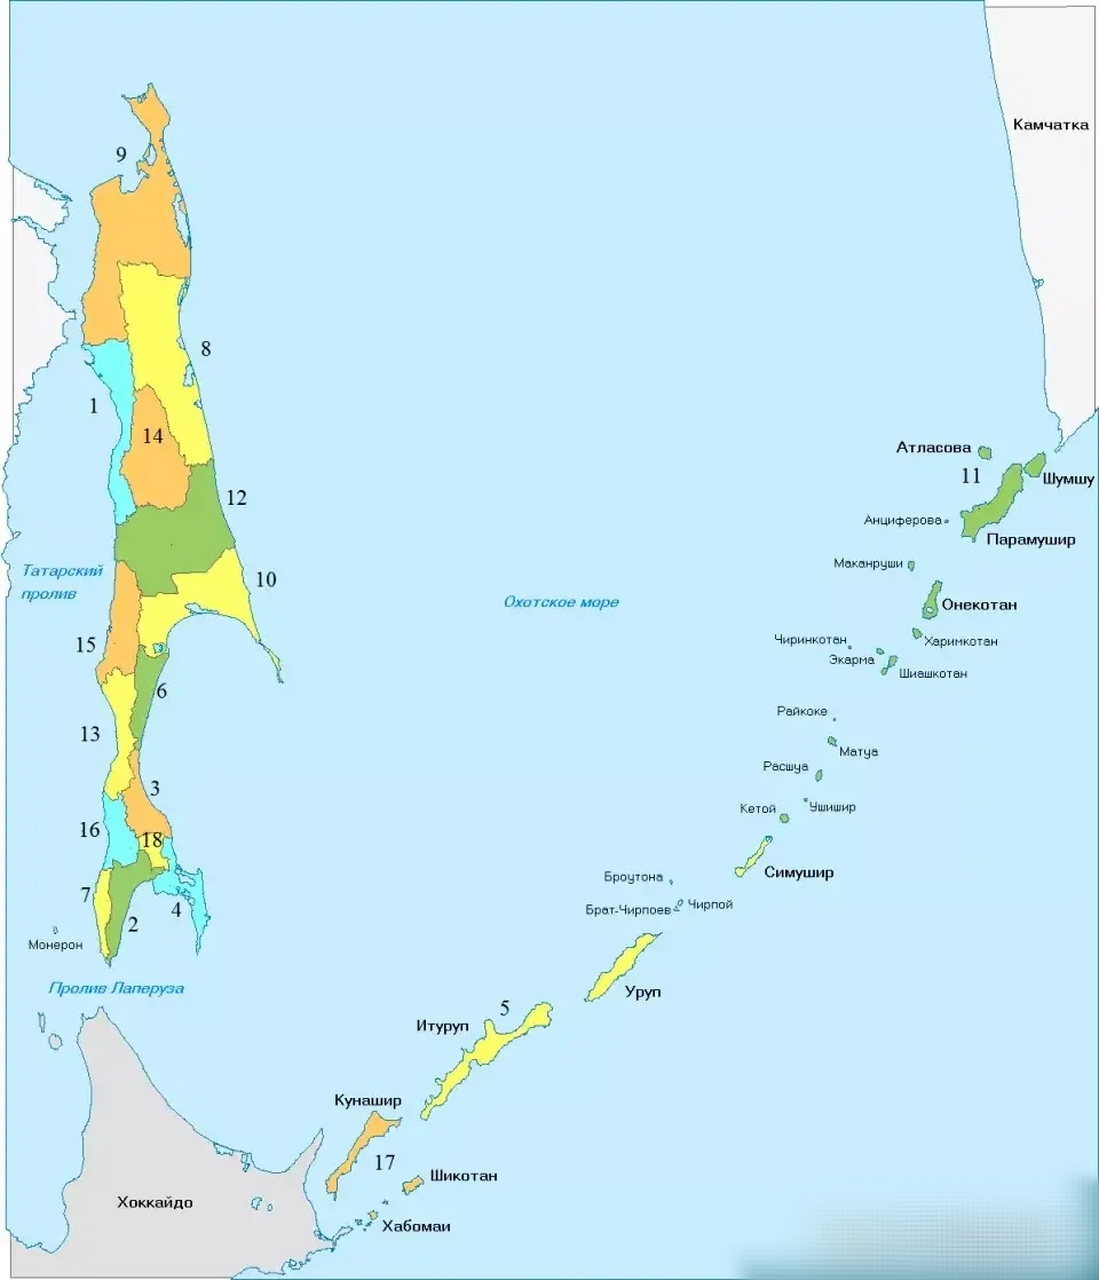 库页岛日治时期行政区一览,地名都是日本风格,日本人叫它桦太岛,现在